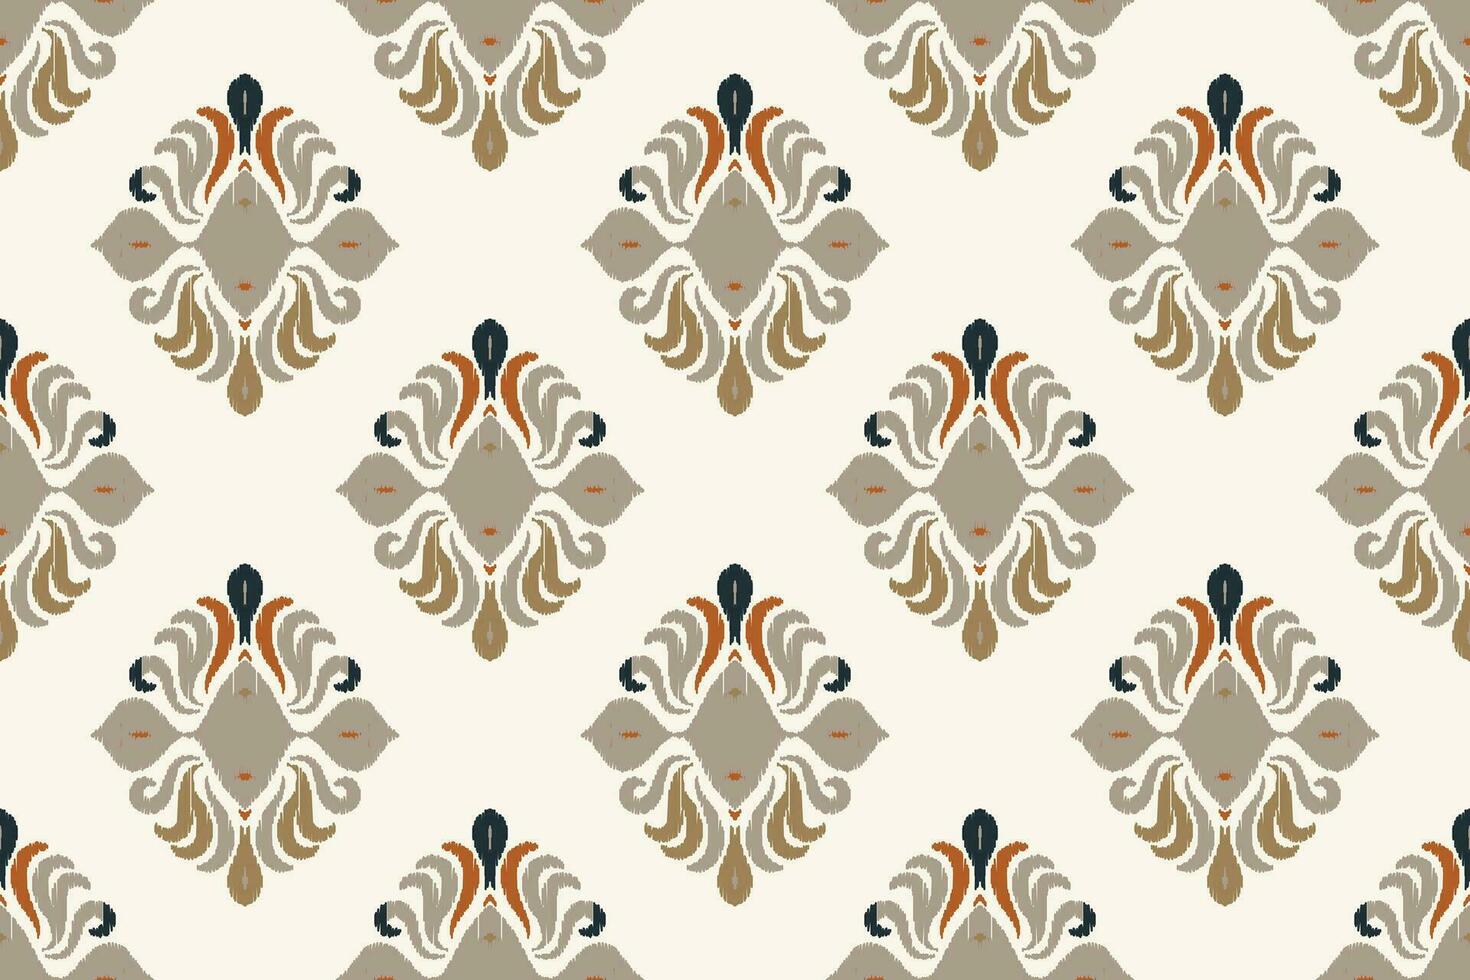 motief ikat paisley borduurwerk achtergrond. ikat bloemen meetkundig etnisch oosters patroon traditioneel.azteken stijl abstract vector illustratie.ontwerp voor textuur, stof, kleding, verpakking, sarong.